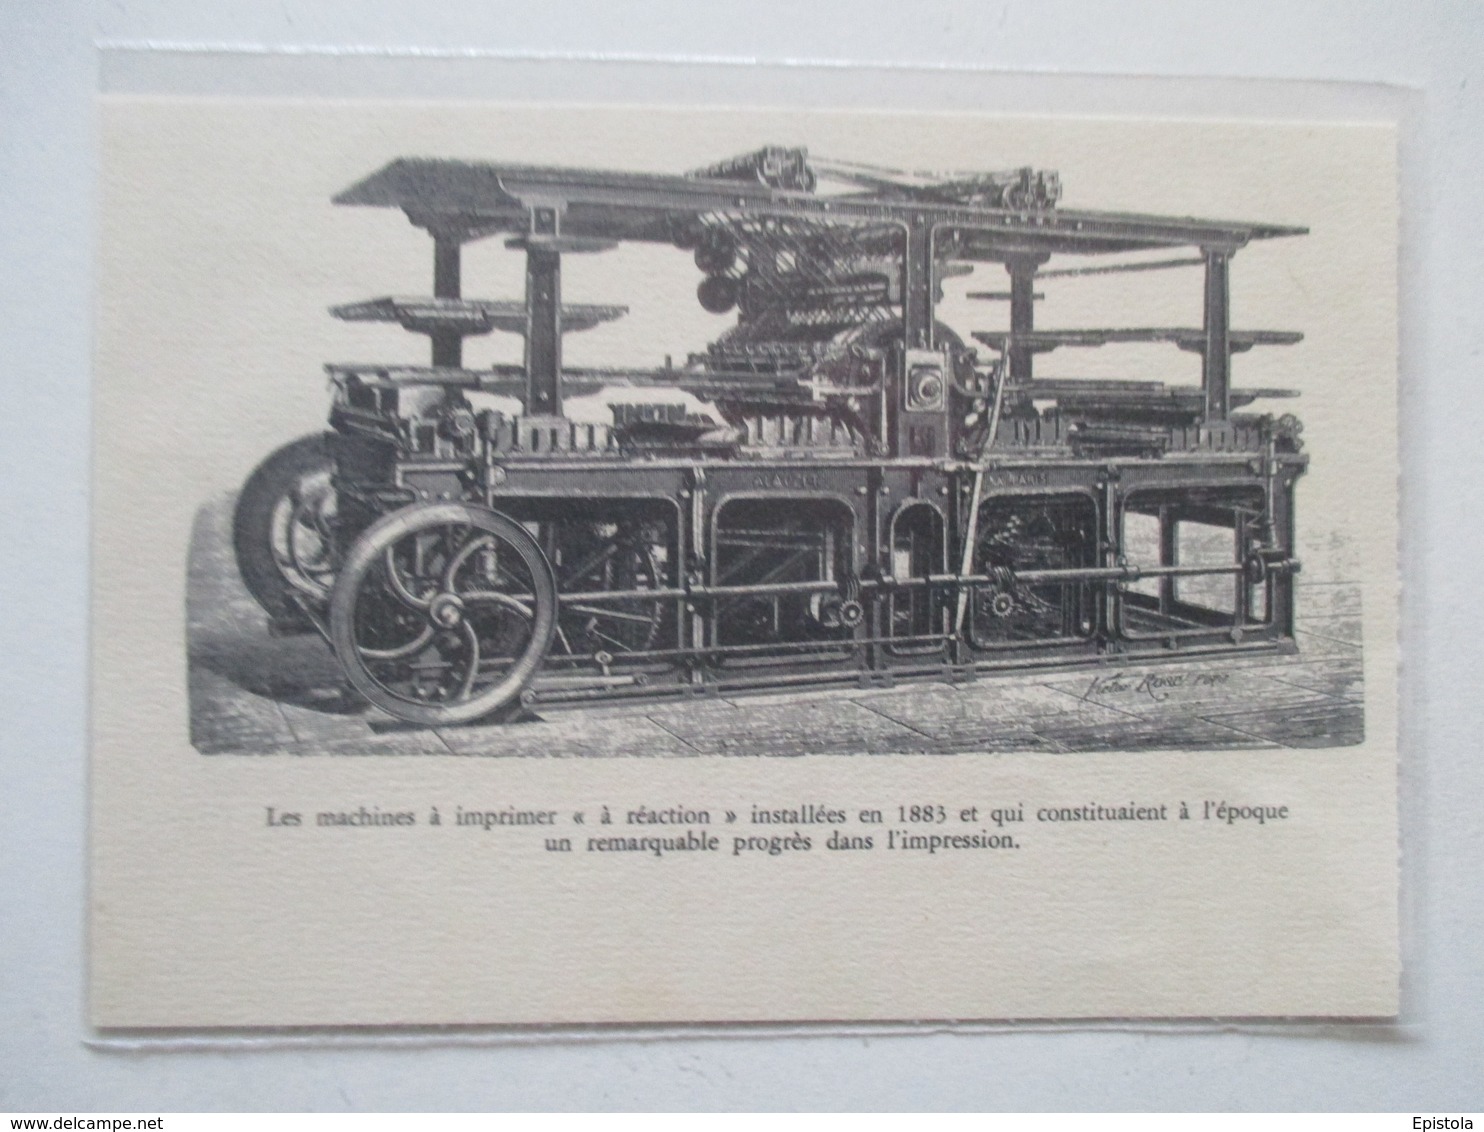 Matériel  -  Presses  IMPRIMERIE De 1883  -  Coupure De Presse De 1933 - Other Apparatus